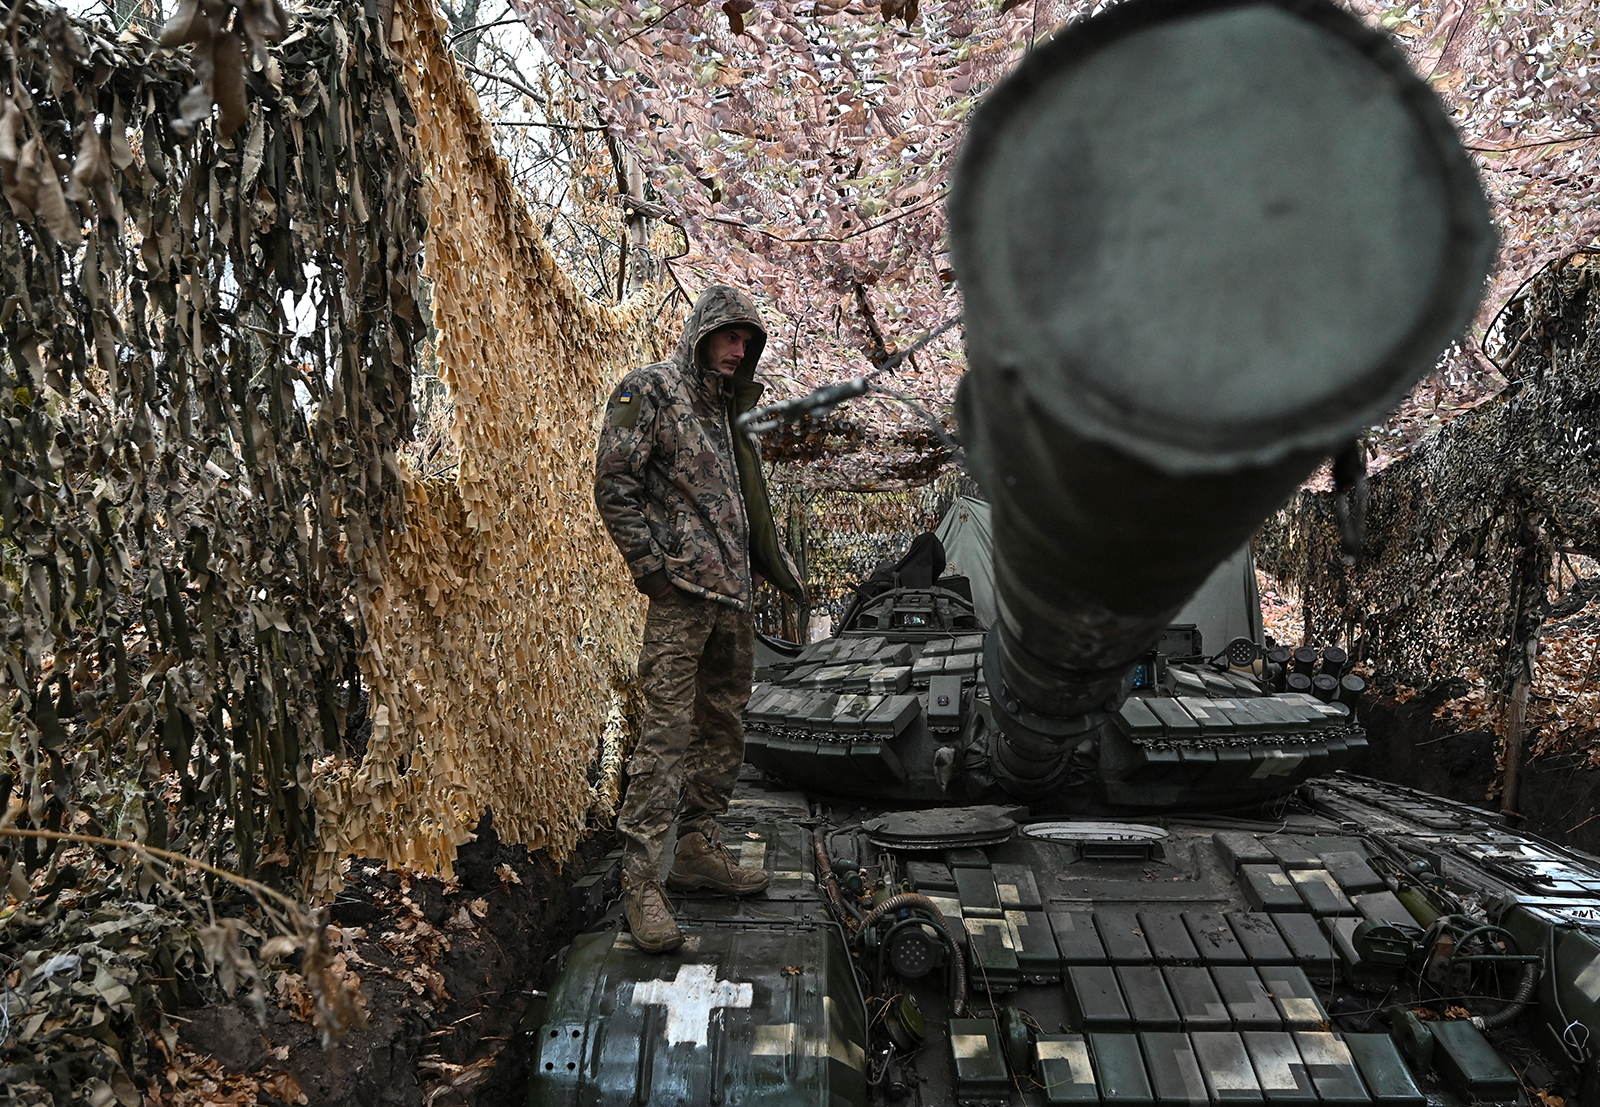 مسؤولون غربيون: مفاوضات سلام محتملة مع روسيا لإنهاء الحرب في أوكرانيا